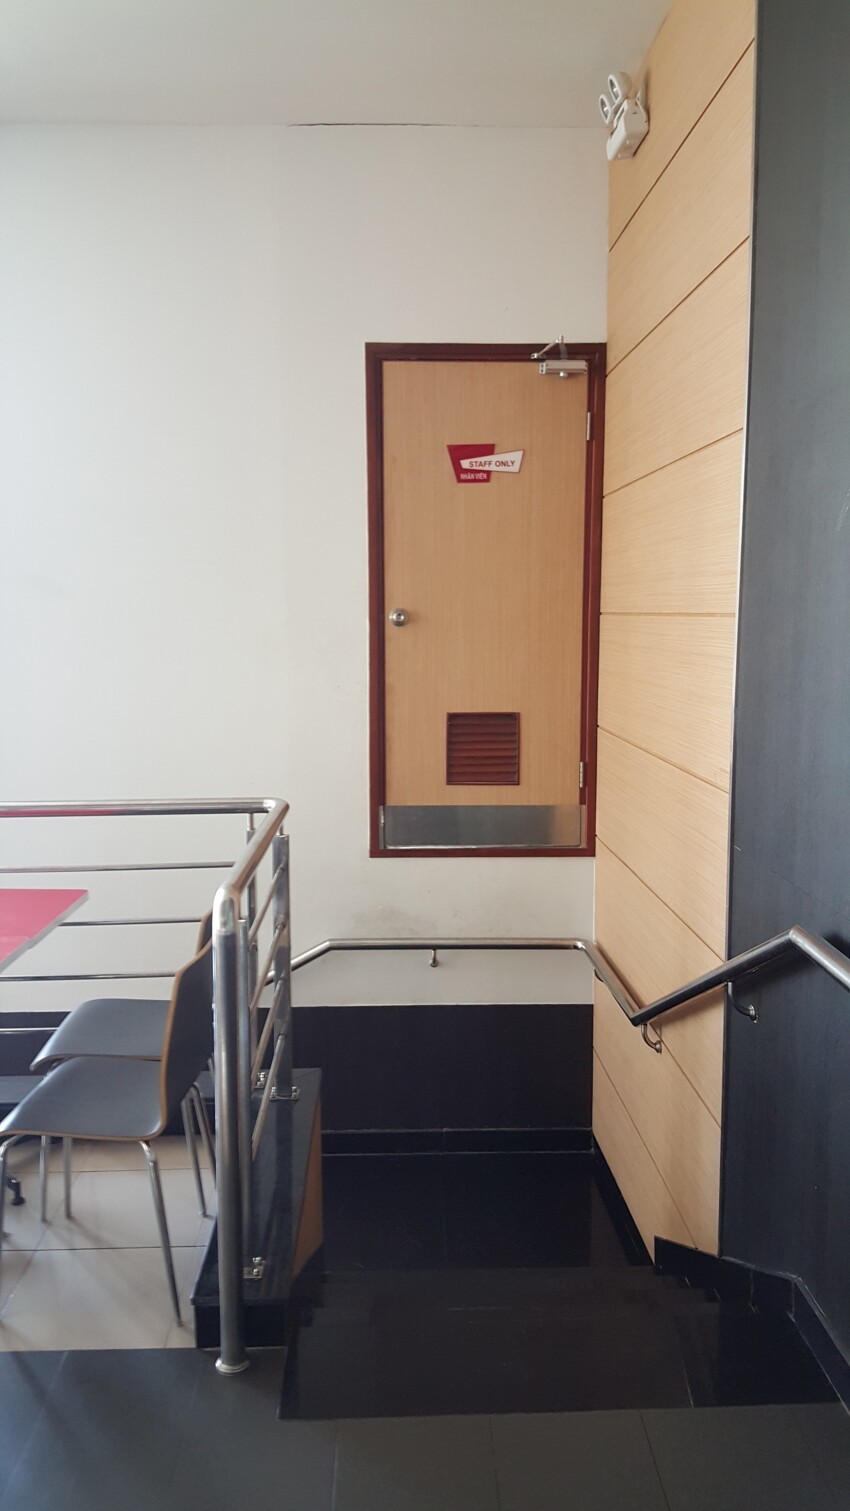 Такая вот дверь для персонала в фастфуде KFC. Хорошо, что повесили табличку только для персонала, а то обязательно бы слазал туда.